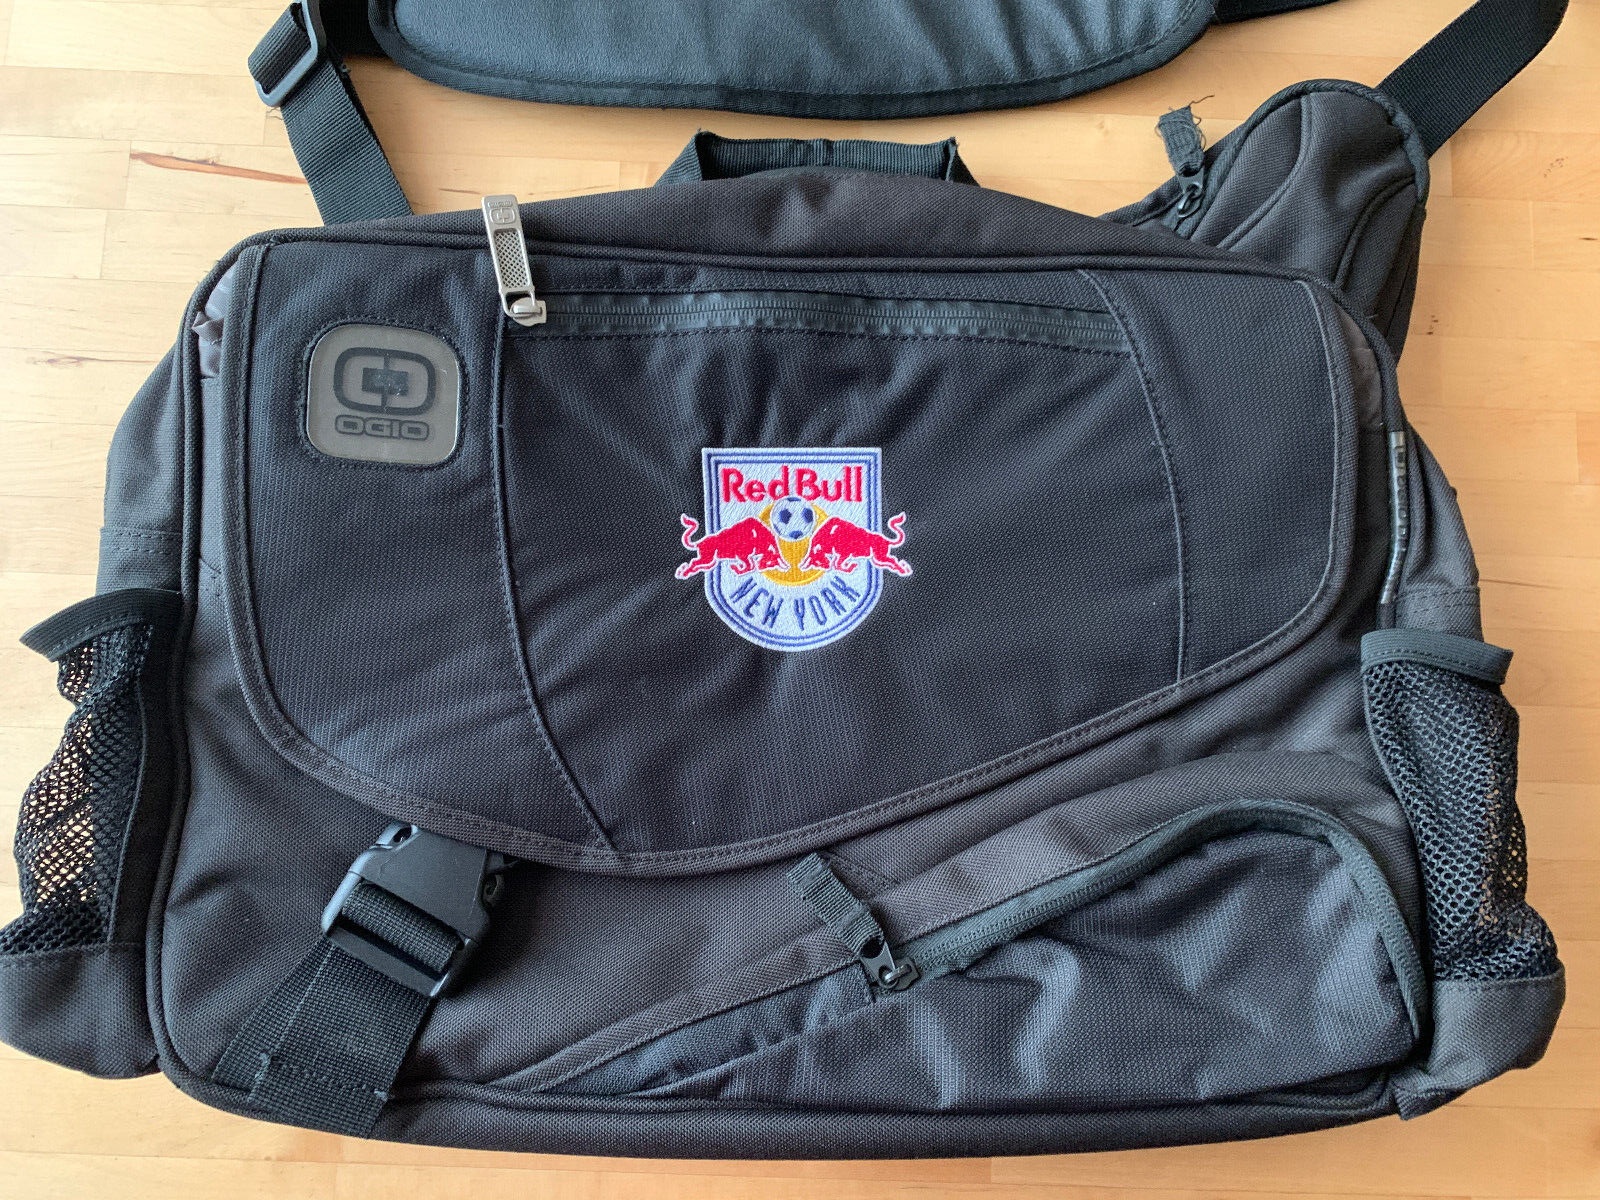 Red Bull New York Ogio Laptop Messenger Bag, Black, Many Pockets, Padding, NWOT